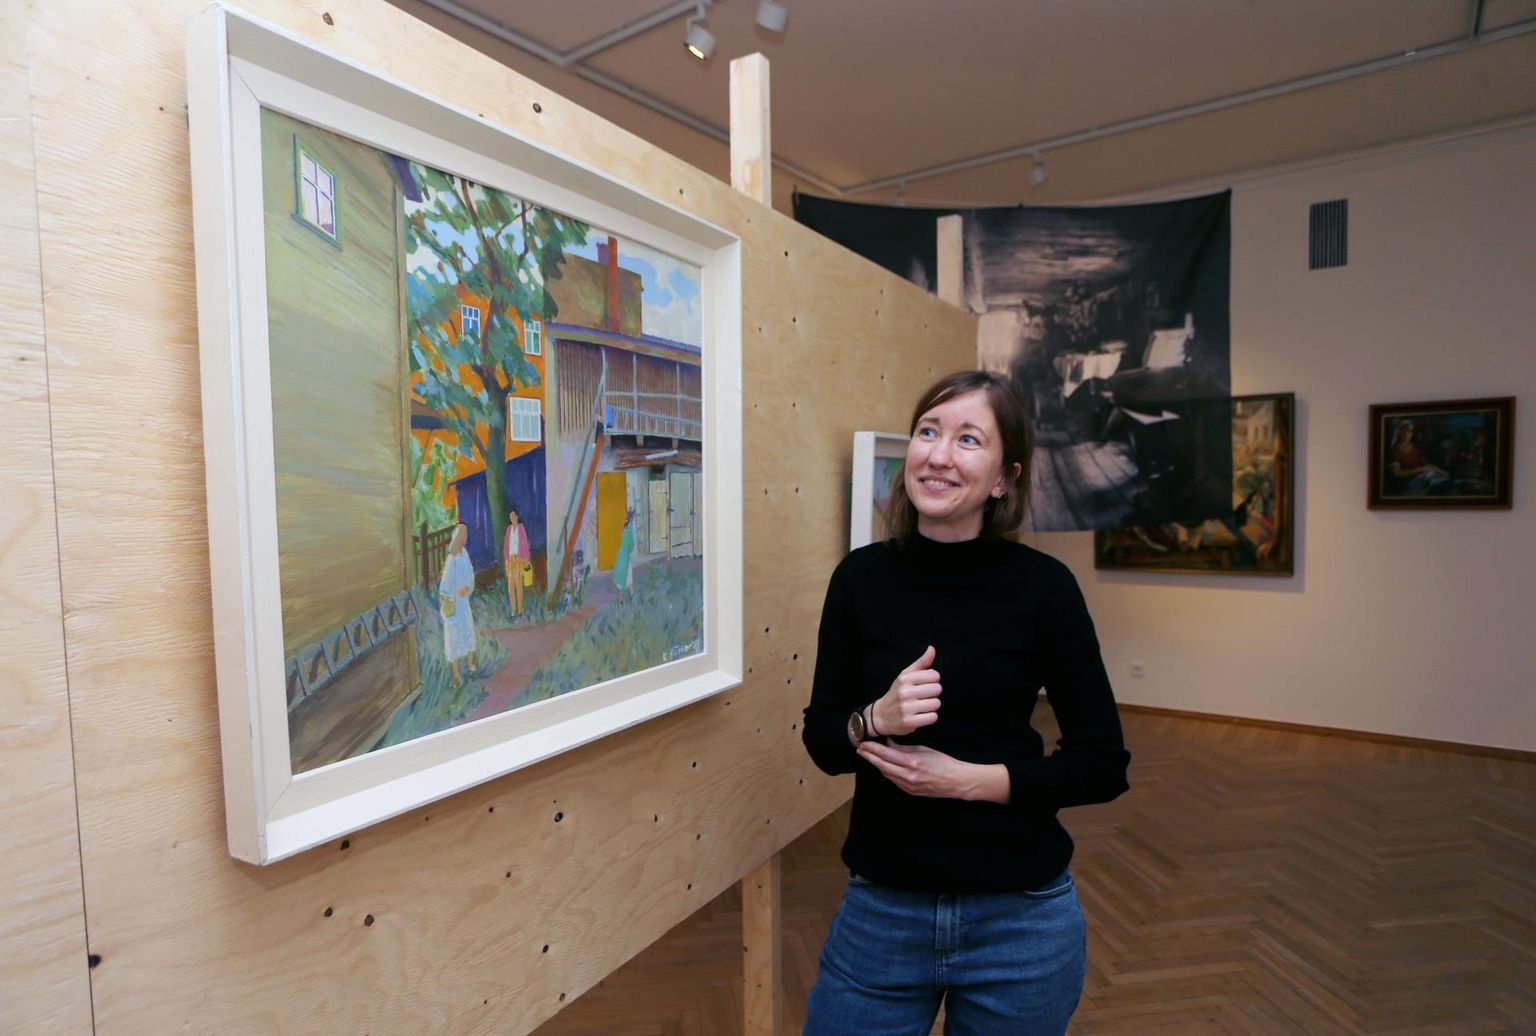 Brita Karin Arnover peatus valmivat näitust tutvustades Kaja Kärneri maali juures. See on maalitud aastal 1989. Tagaplaanil ripub laes Johannes Pääsukese foto ühest Meloni tänava maja sisemusest möödunud sajandi algul.